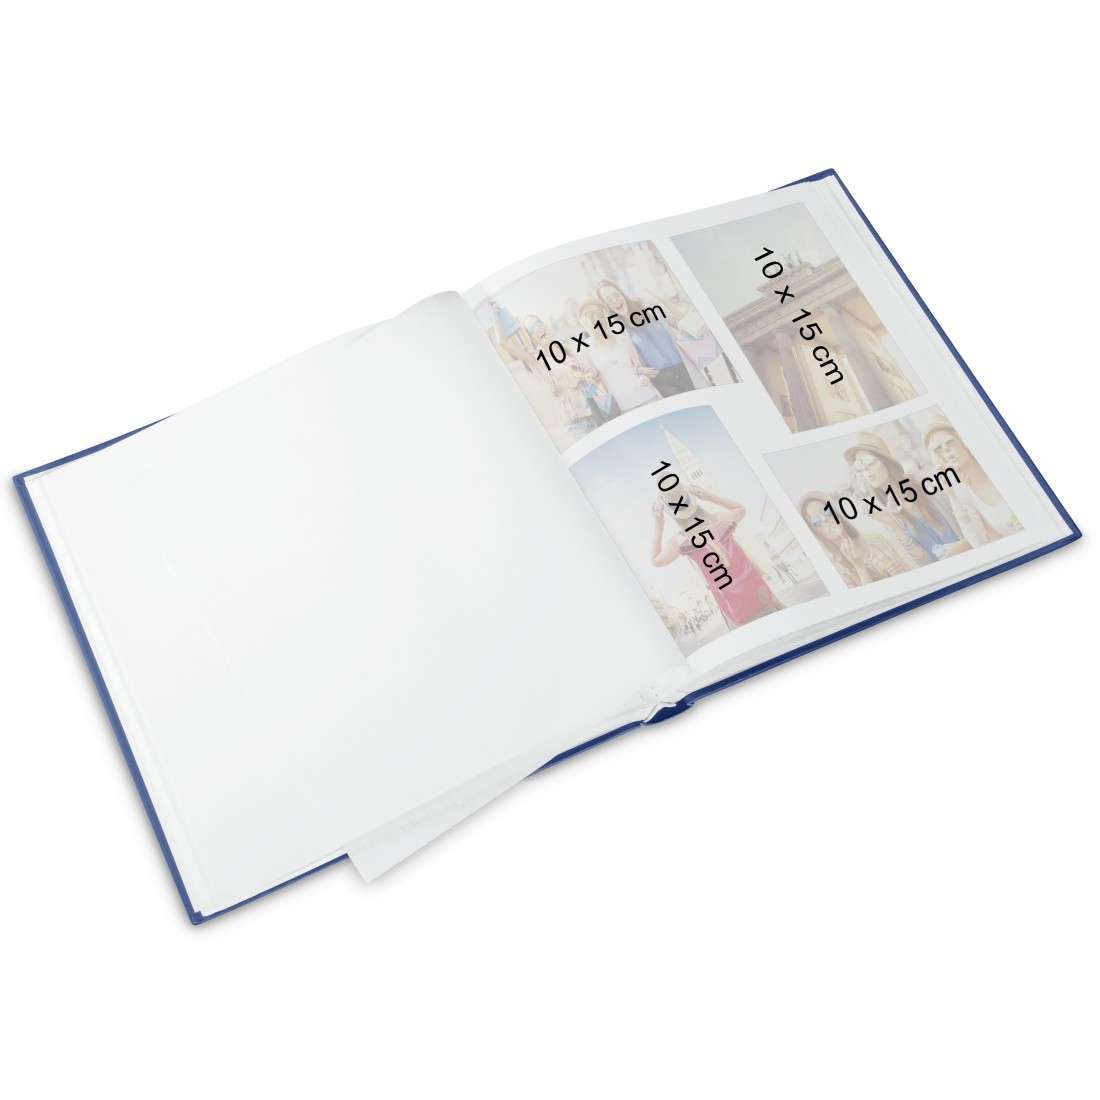 Buch-Album Our Baby, 29x32 cm, 60 weiße Seiten